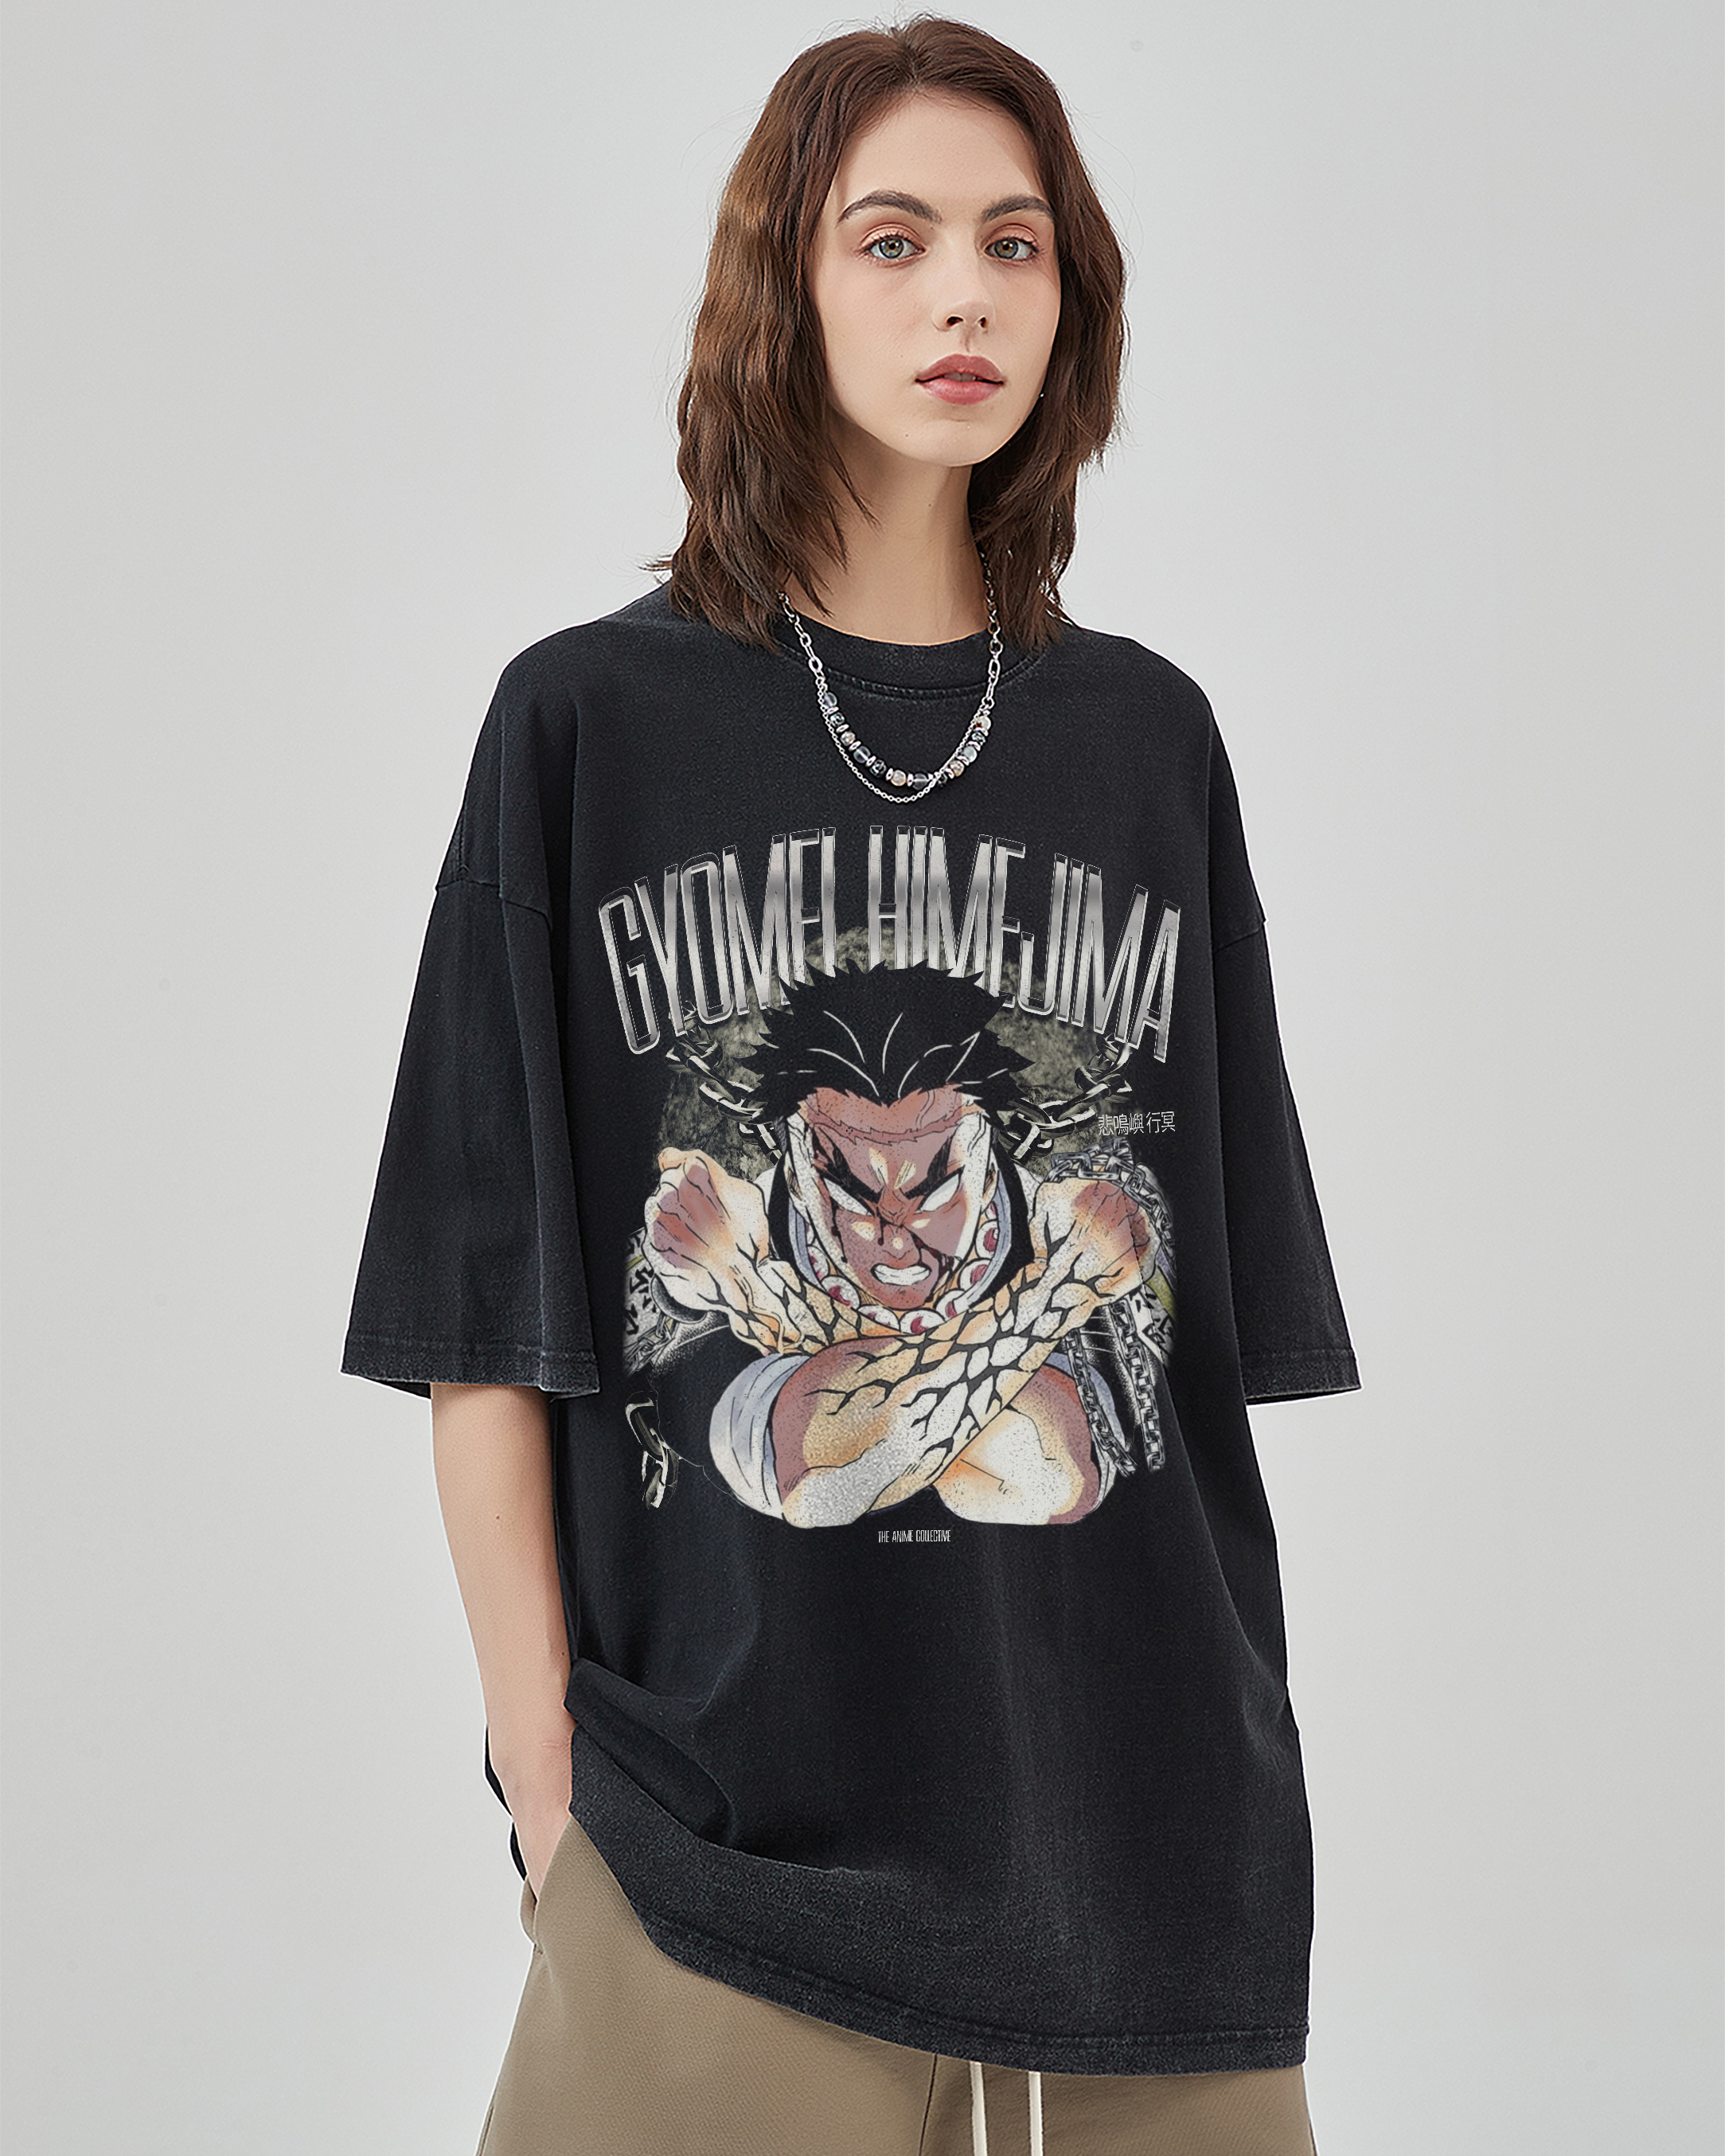 Gyomei Himejima Vintage Oversized T-Shirt